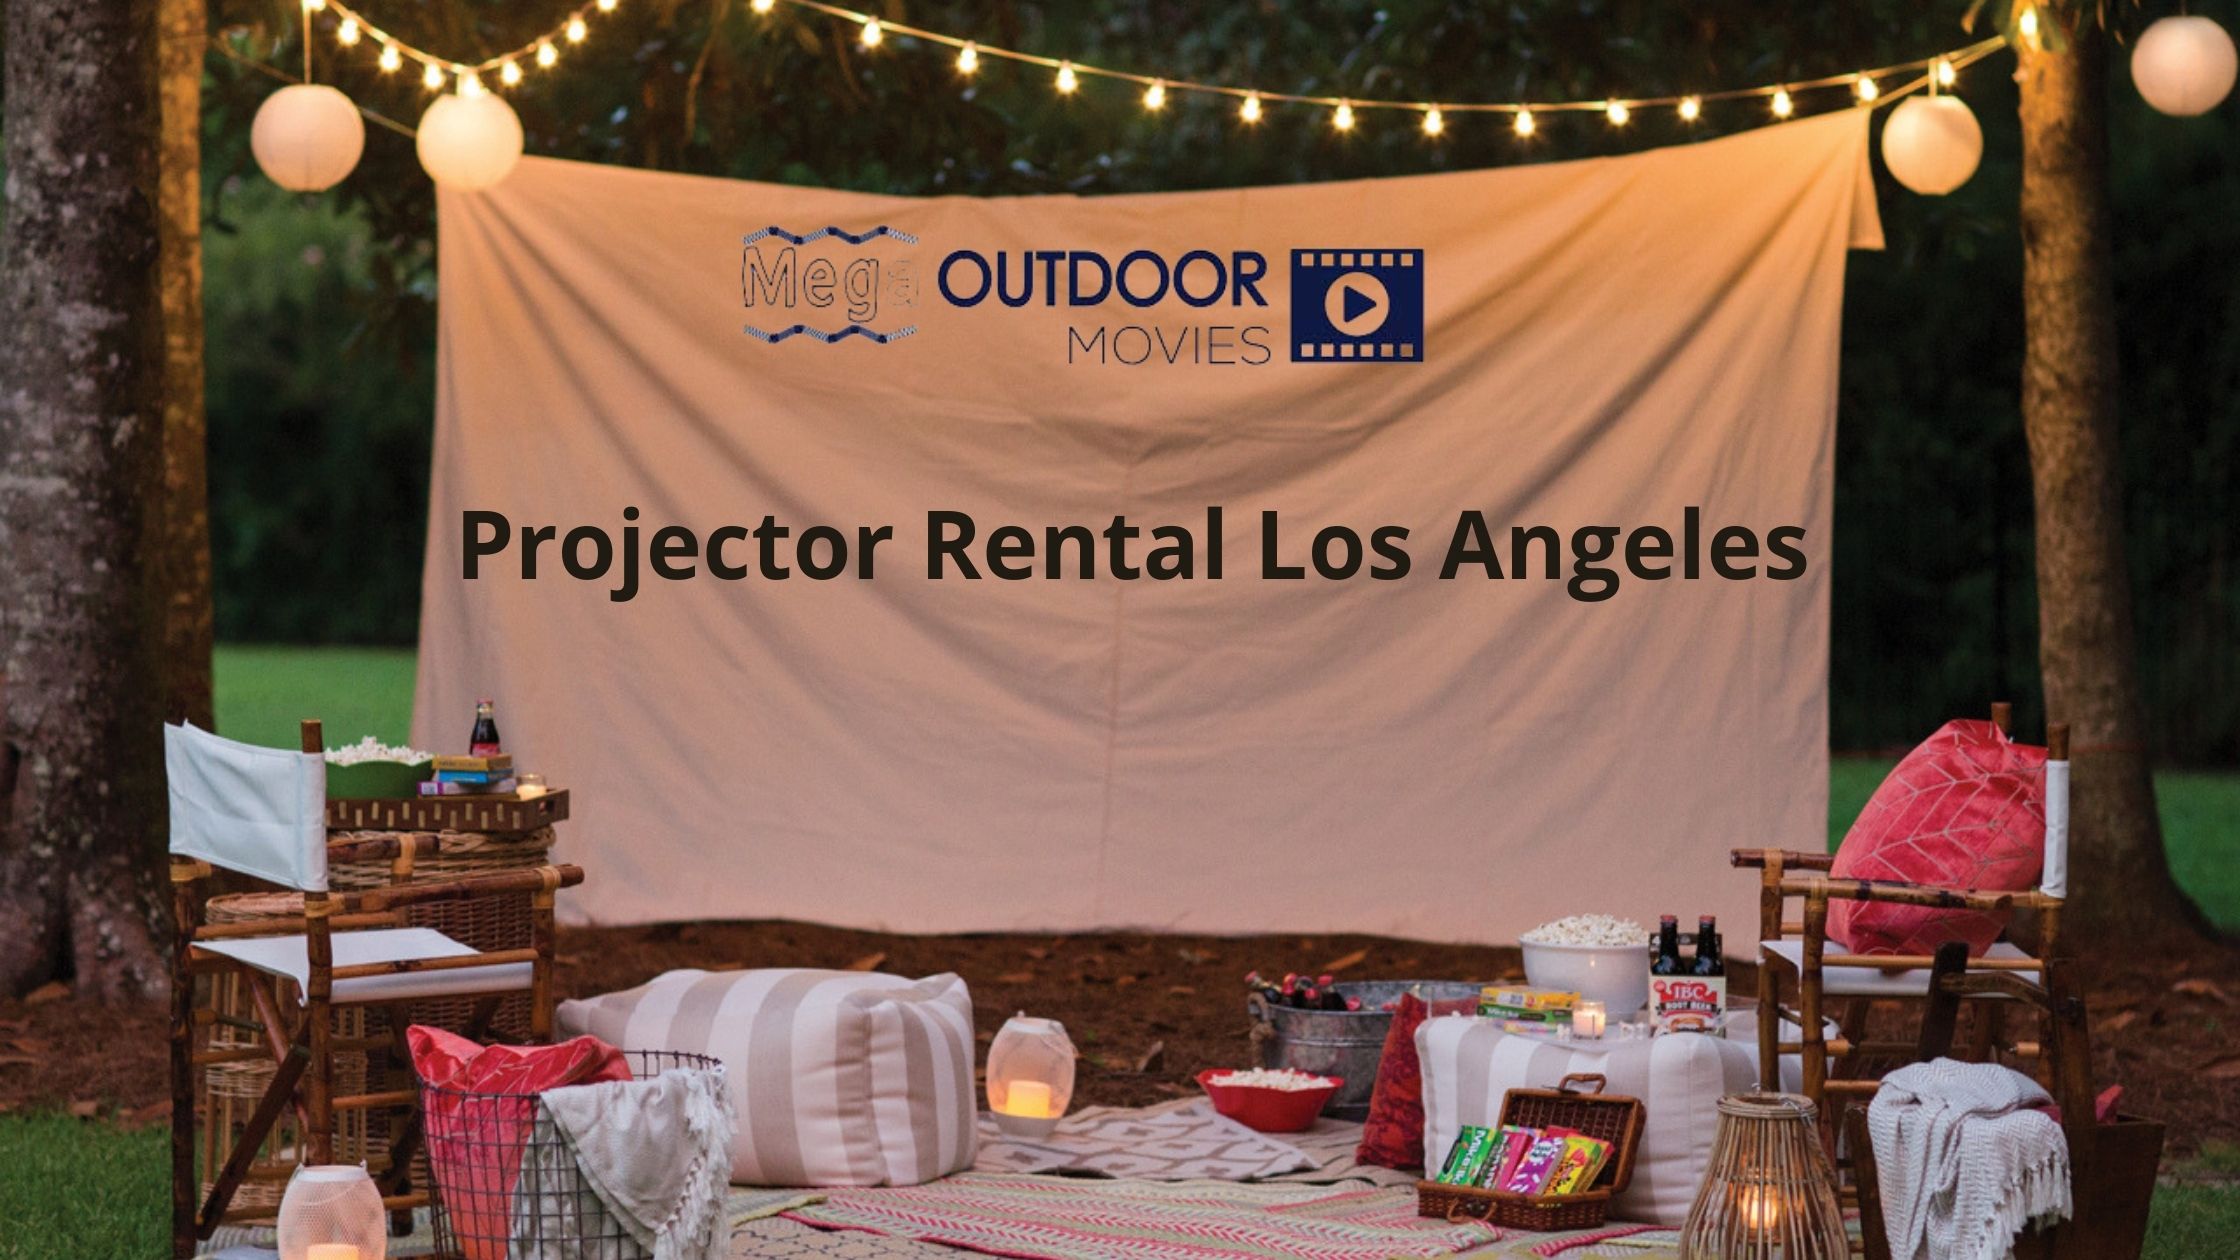 Projector rental Los Angeles